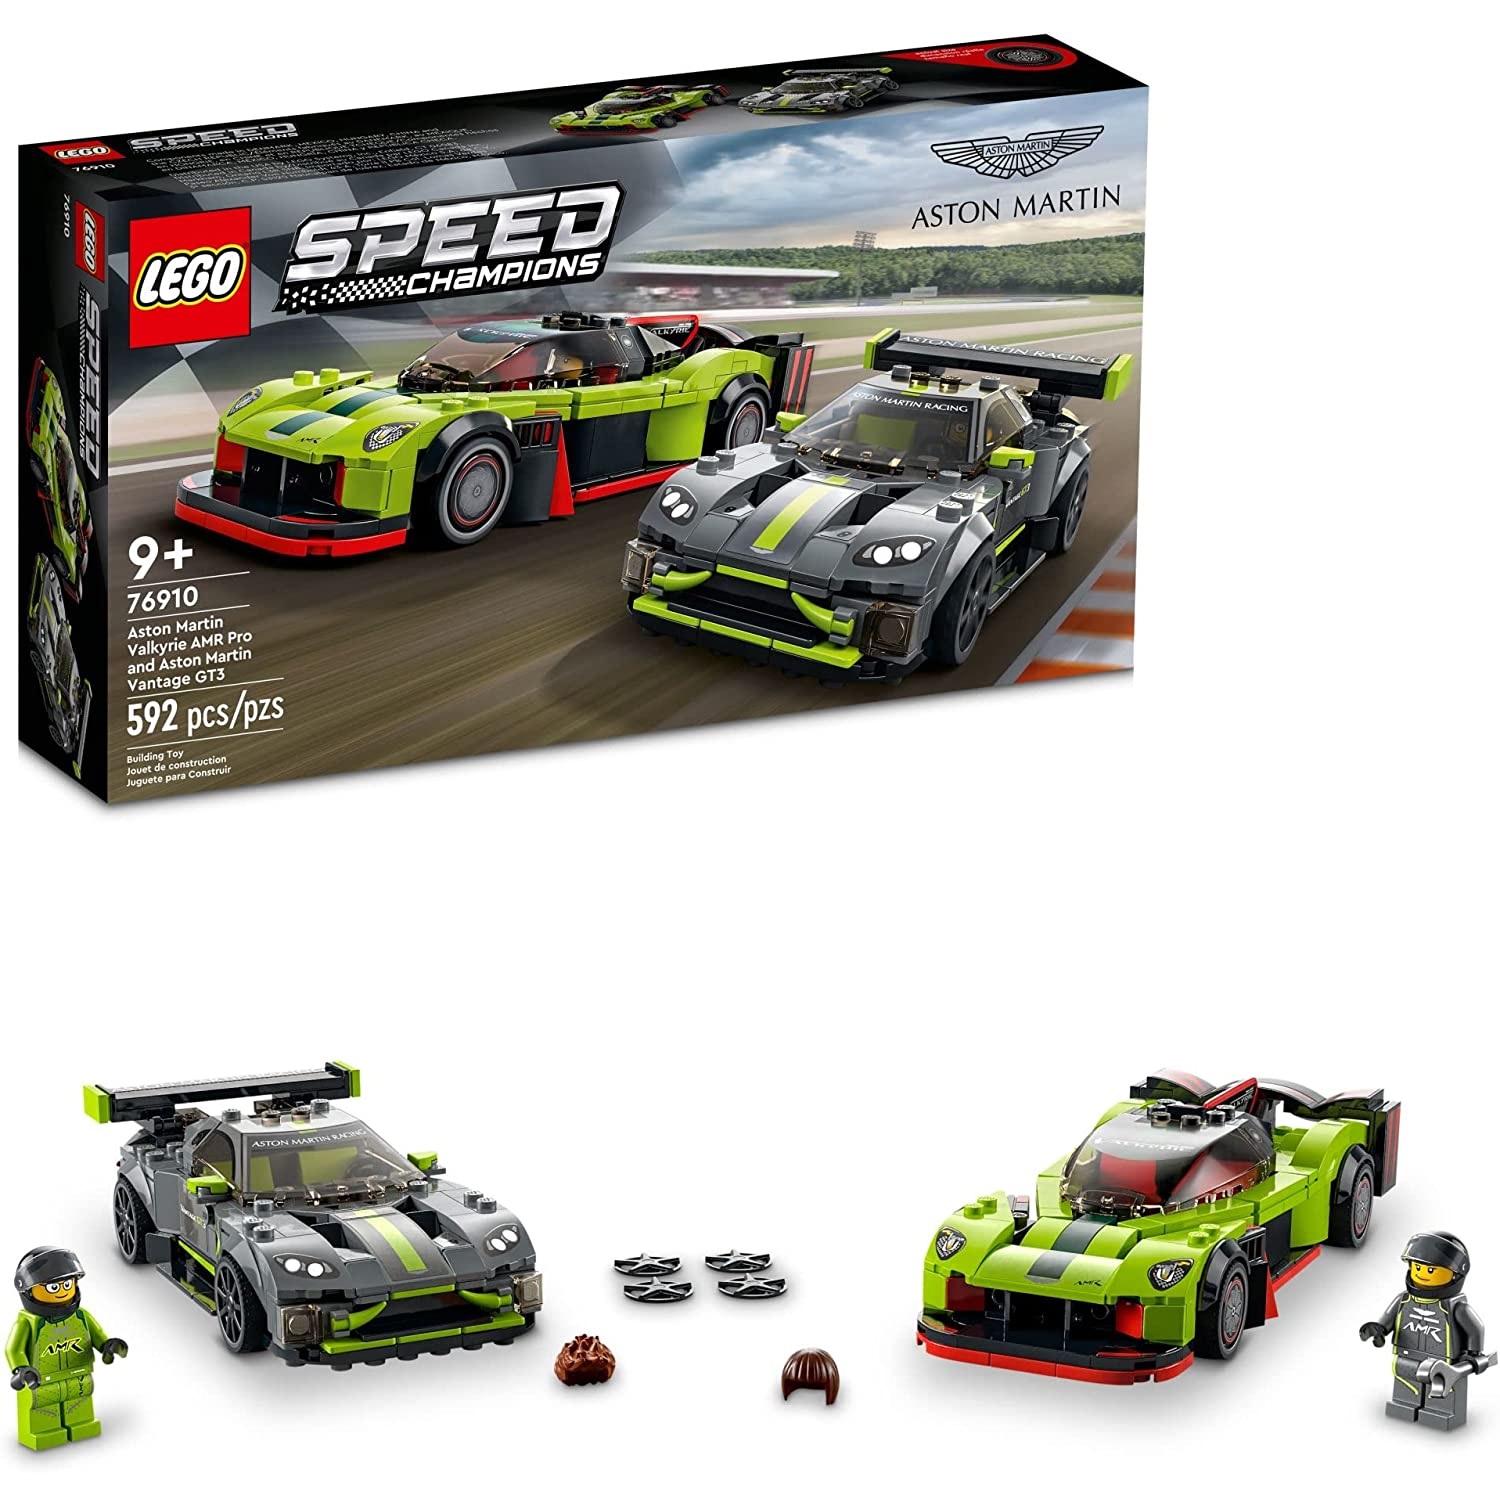 LEGO Speed Champions 76910 - Aston Martin Valkyrie AMR Pro  Aston Martin Vantage GT3